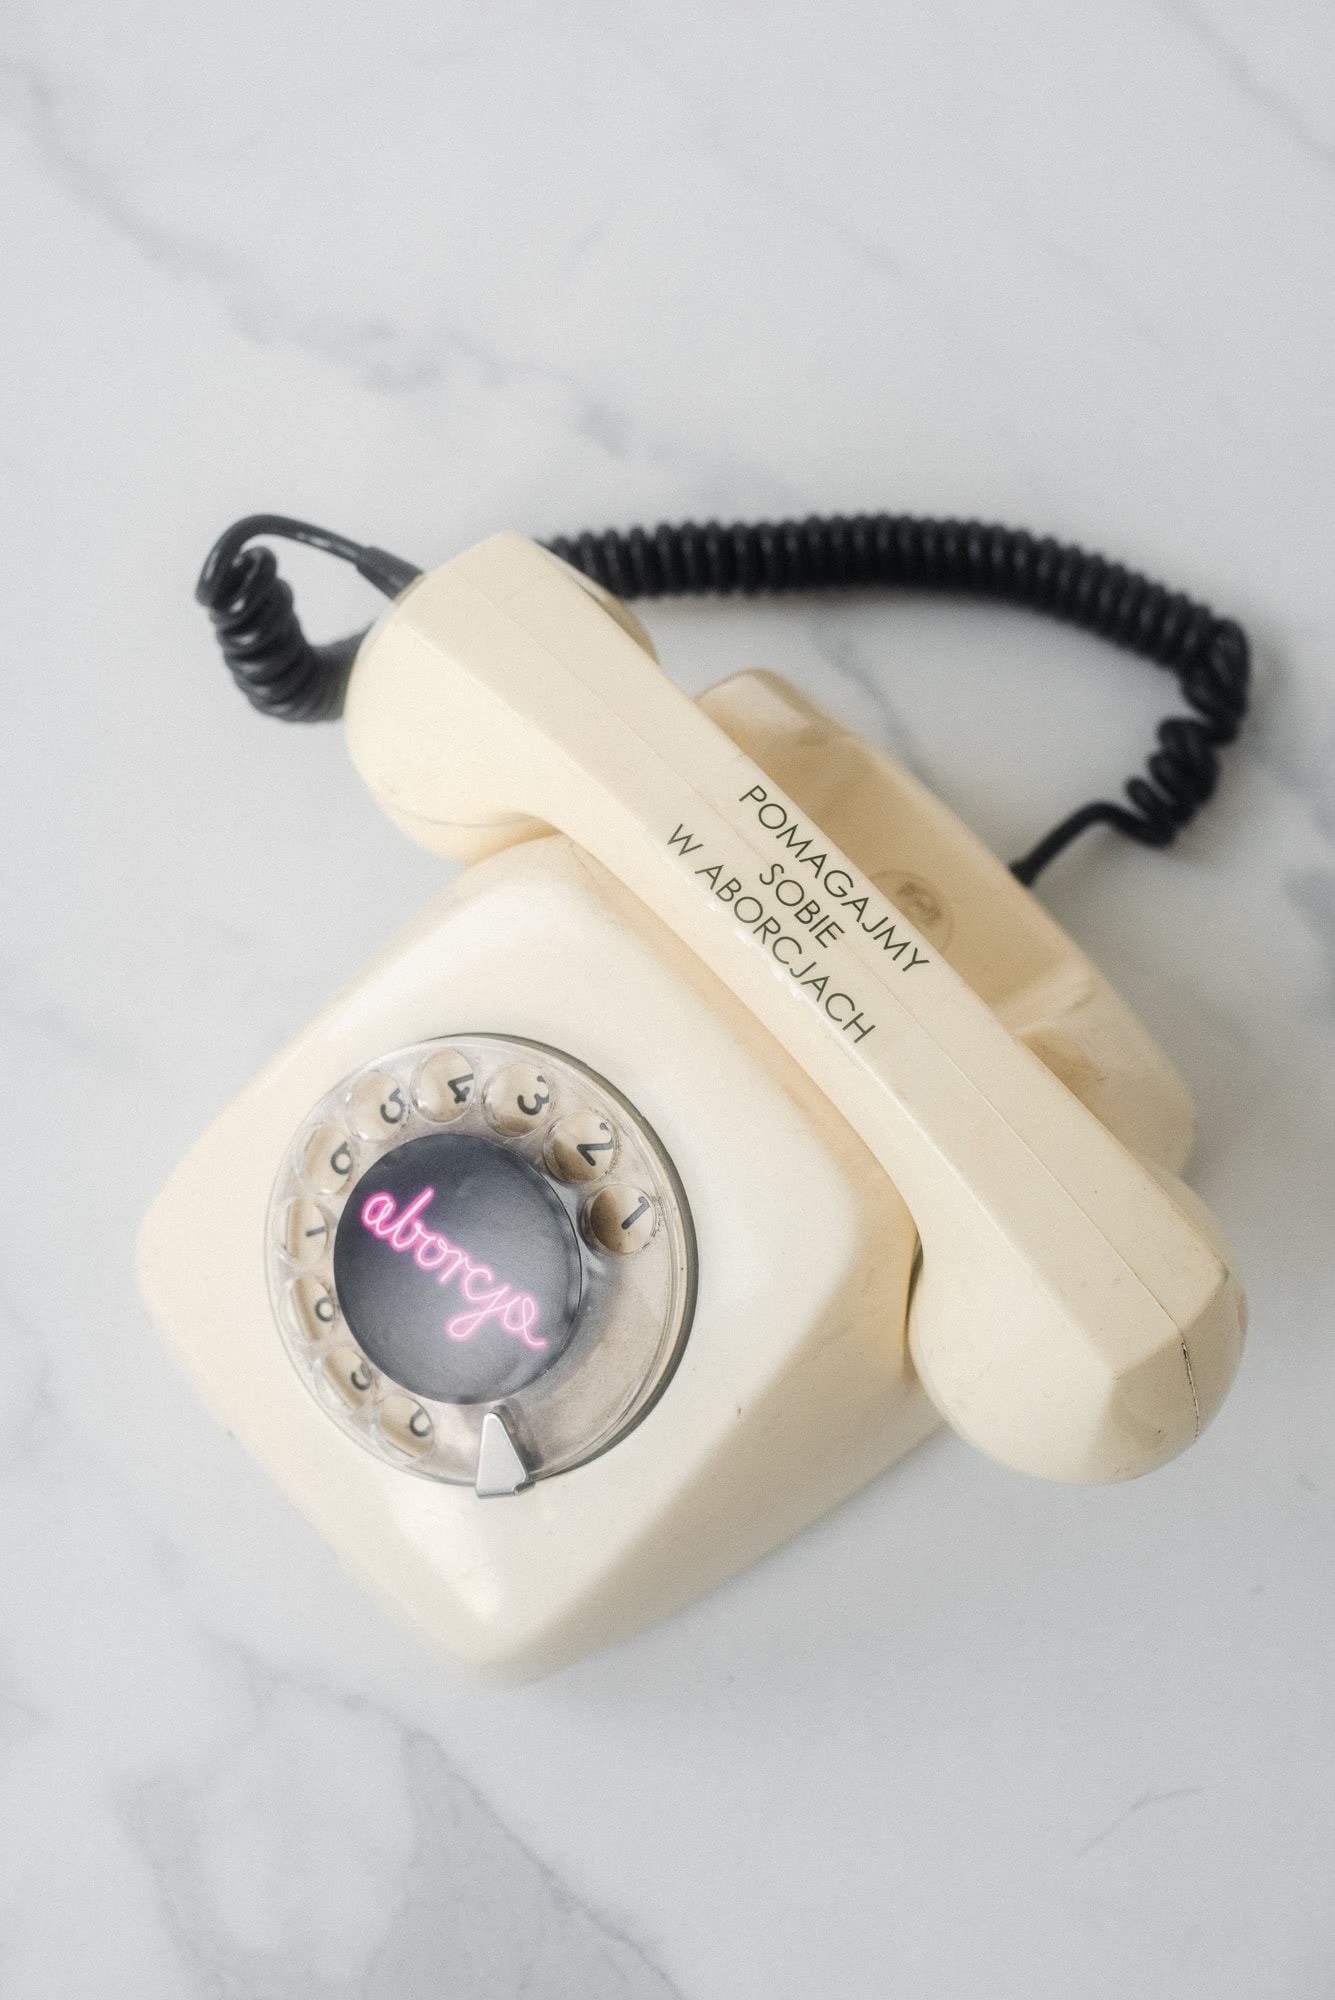 Telefon infolinii aborcyjnej z napisem - Pomagamy sobie w aborcjach.